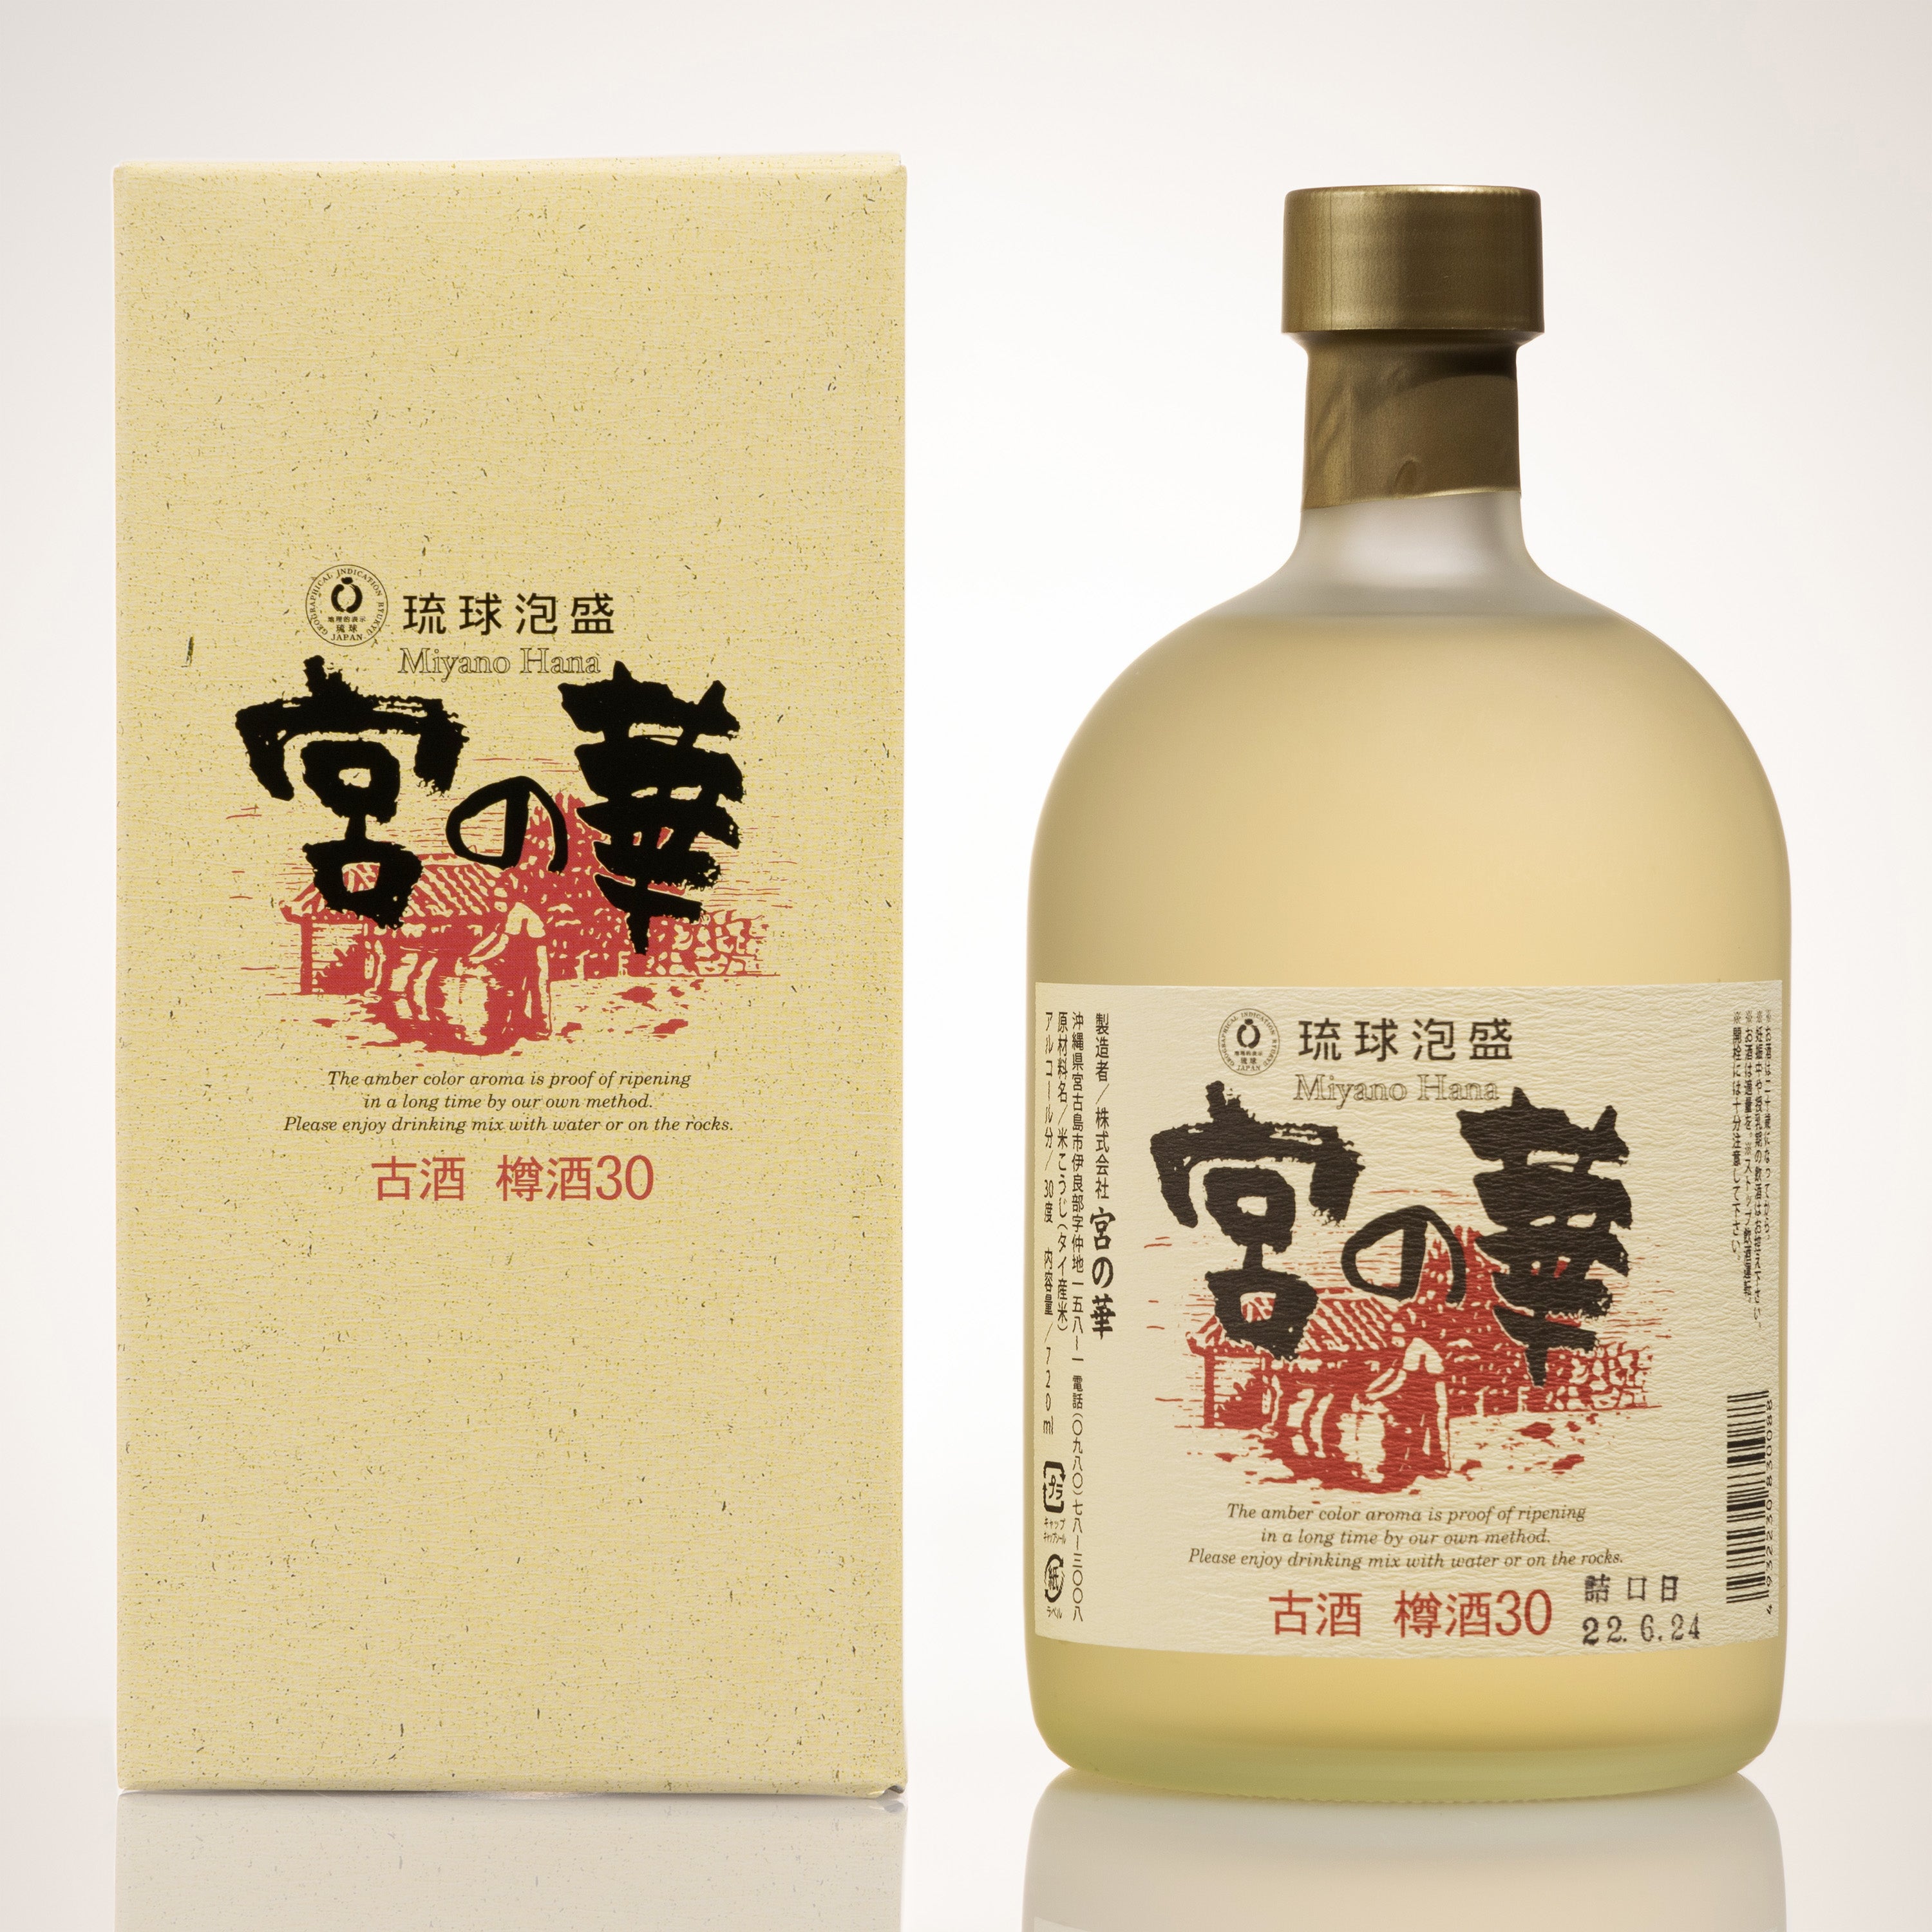 泡盛 レア古酒 限定品沖縄サミット記念 1989年製造 - ドリンク、水、お酒